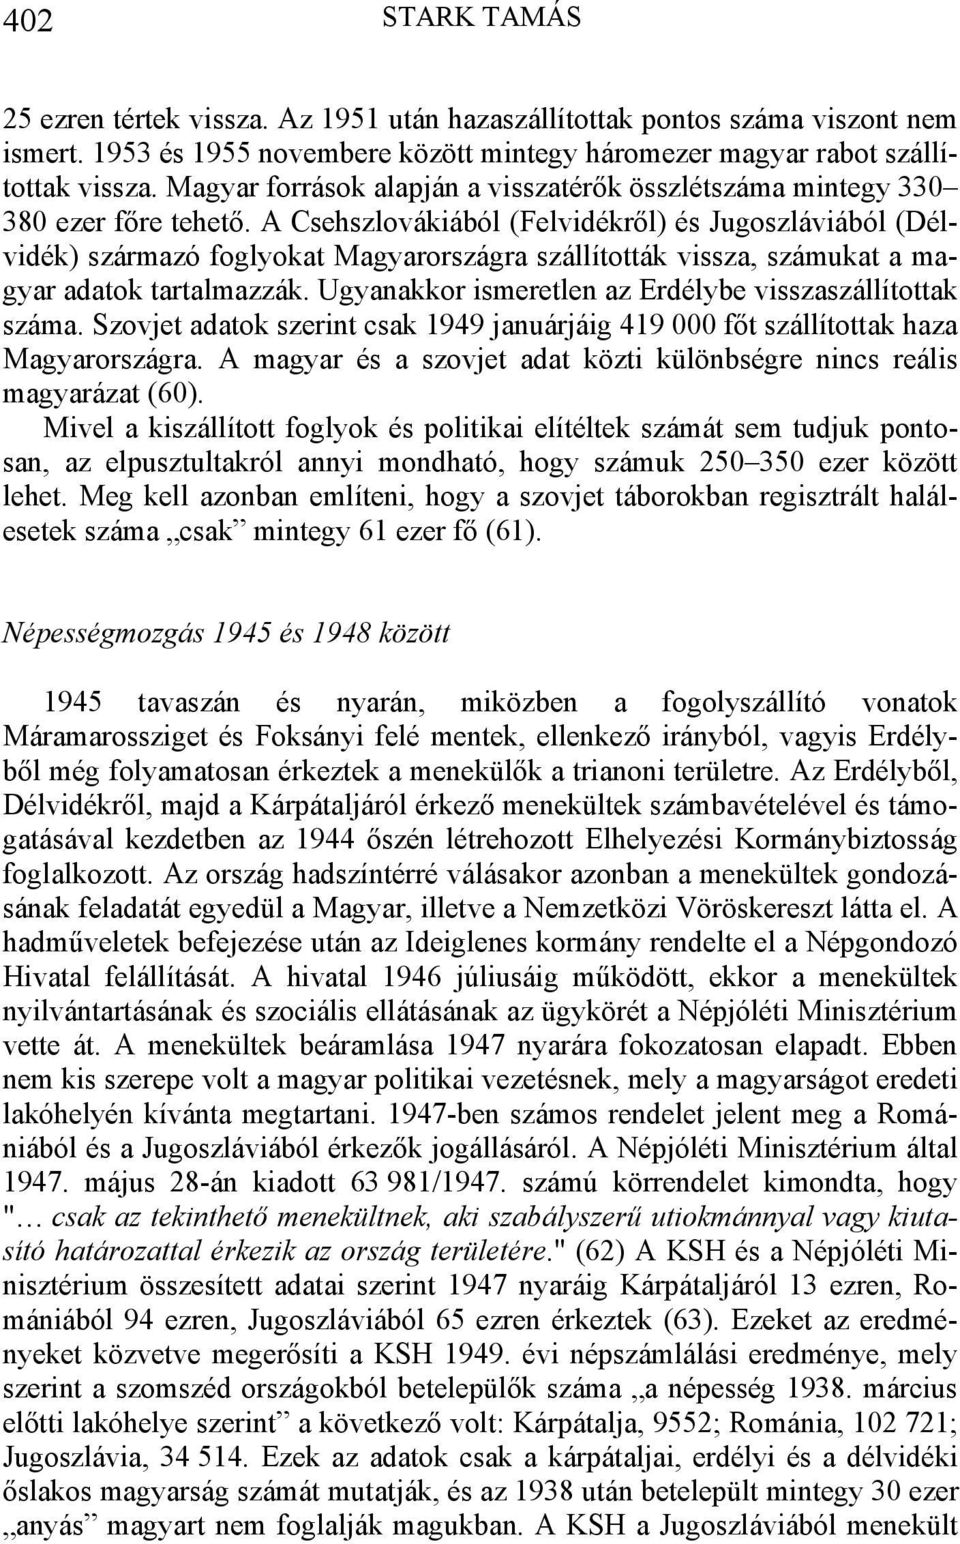 A Csehszlovákiából (Felvidékről) és Jugoszláviából (Délvidék) származó foglyokat Magyarországra szállították vissza, számukat a magyar adatok tartalmazzák.